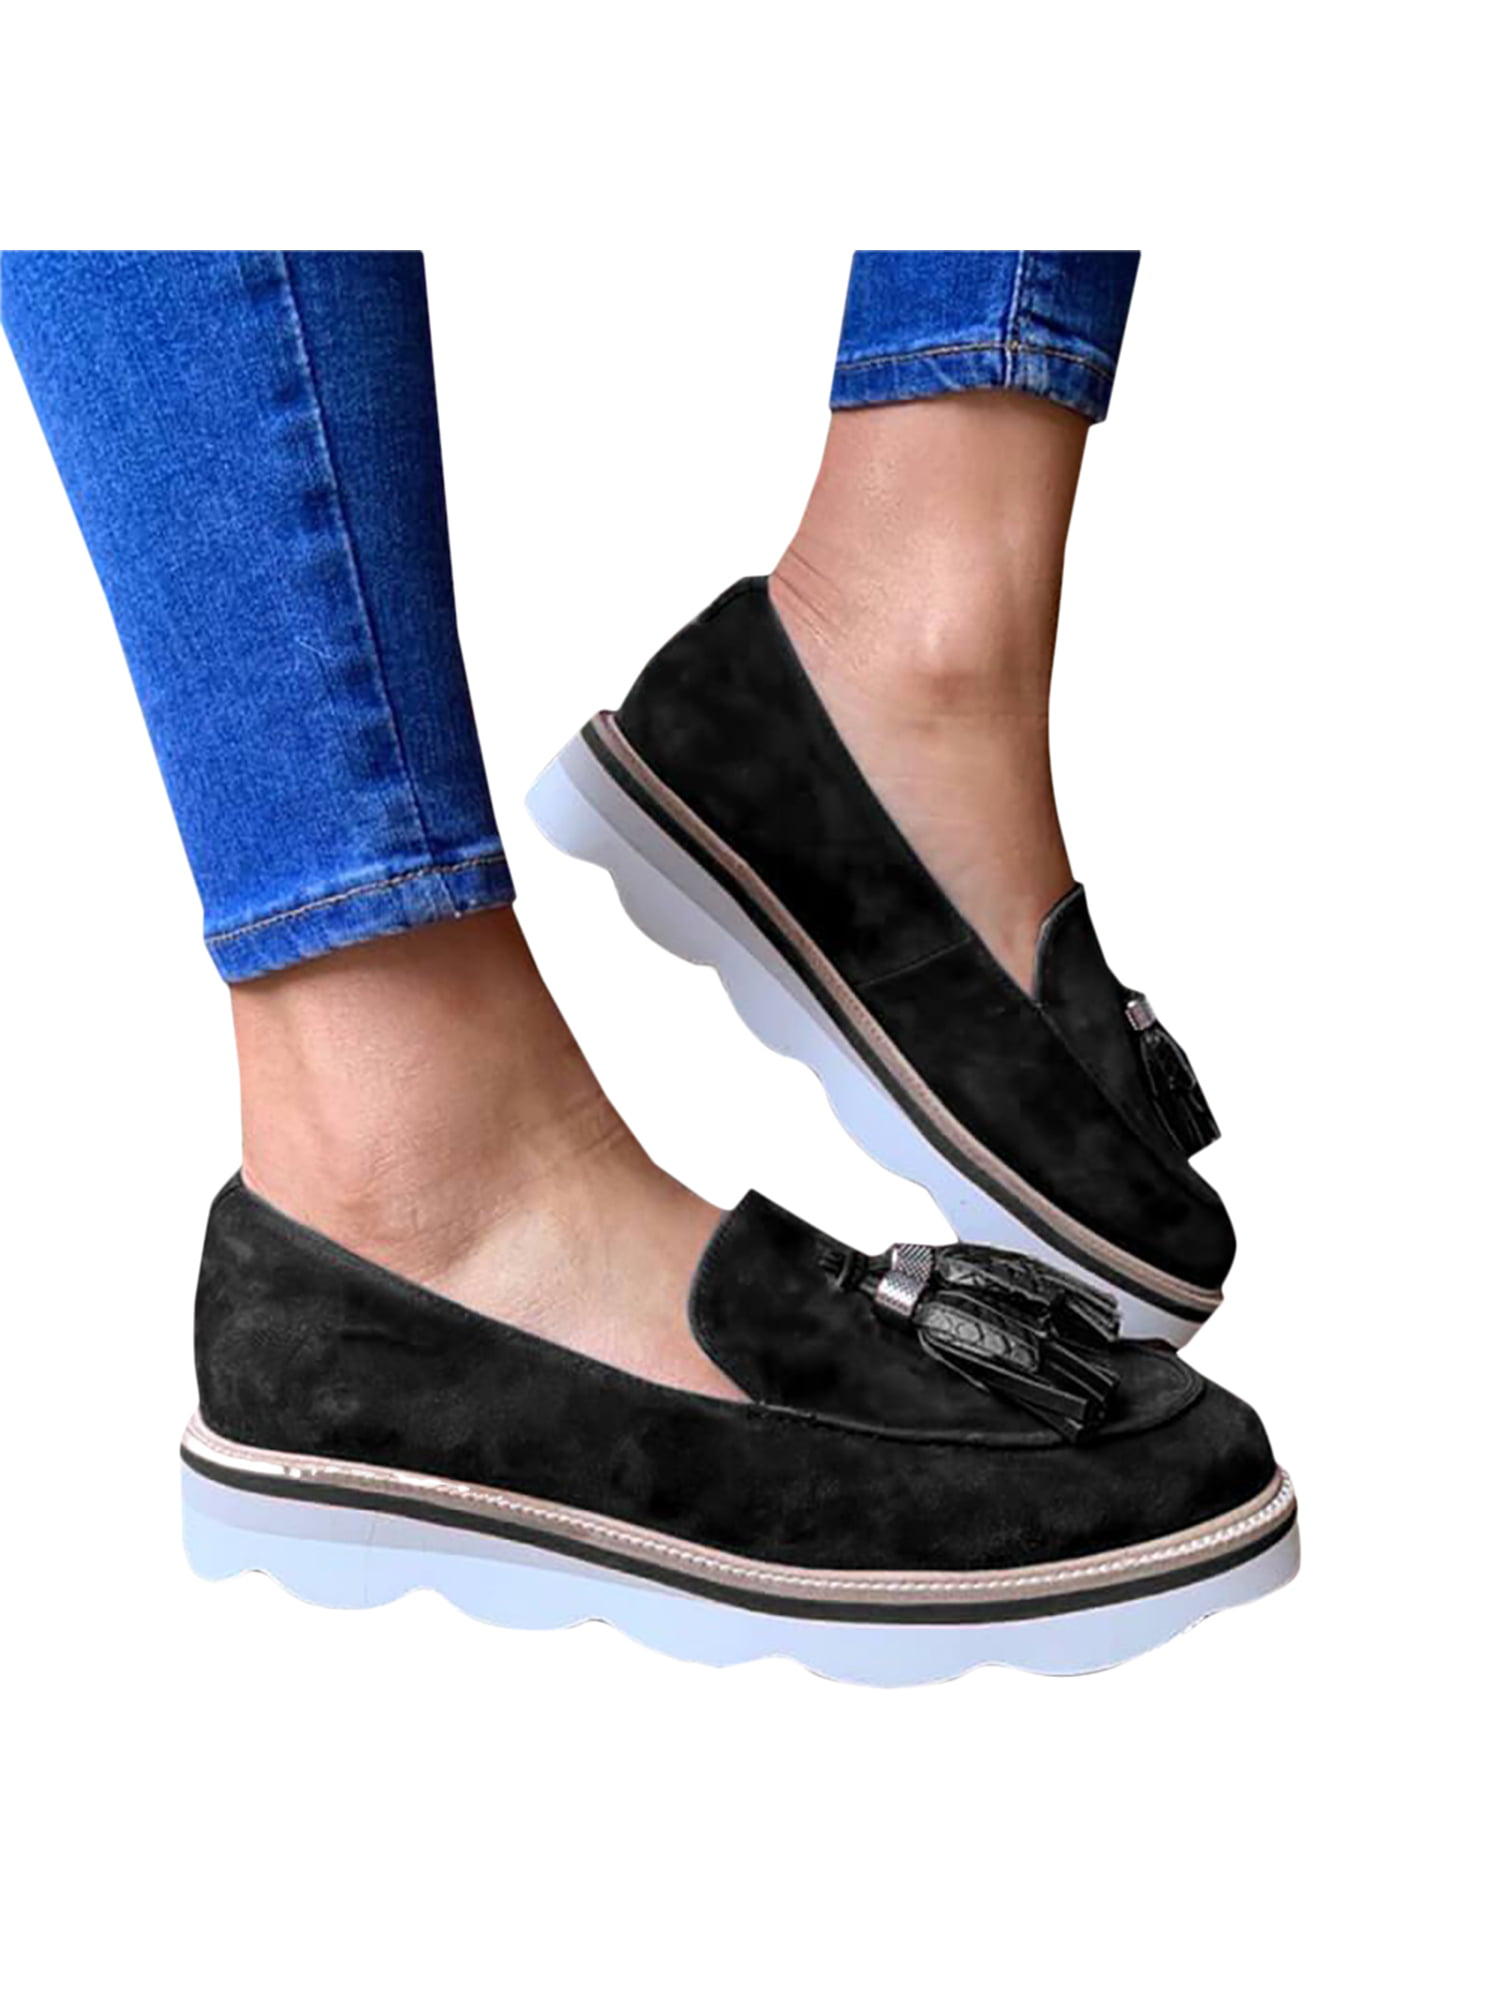 comfy slip on platform shoes reviews